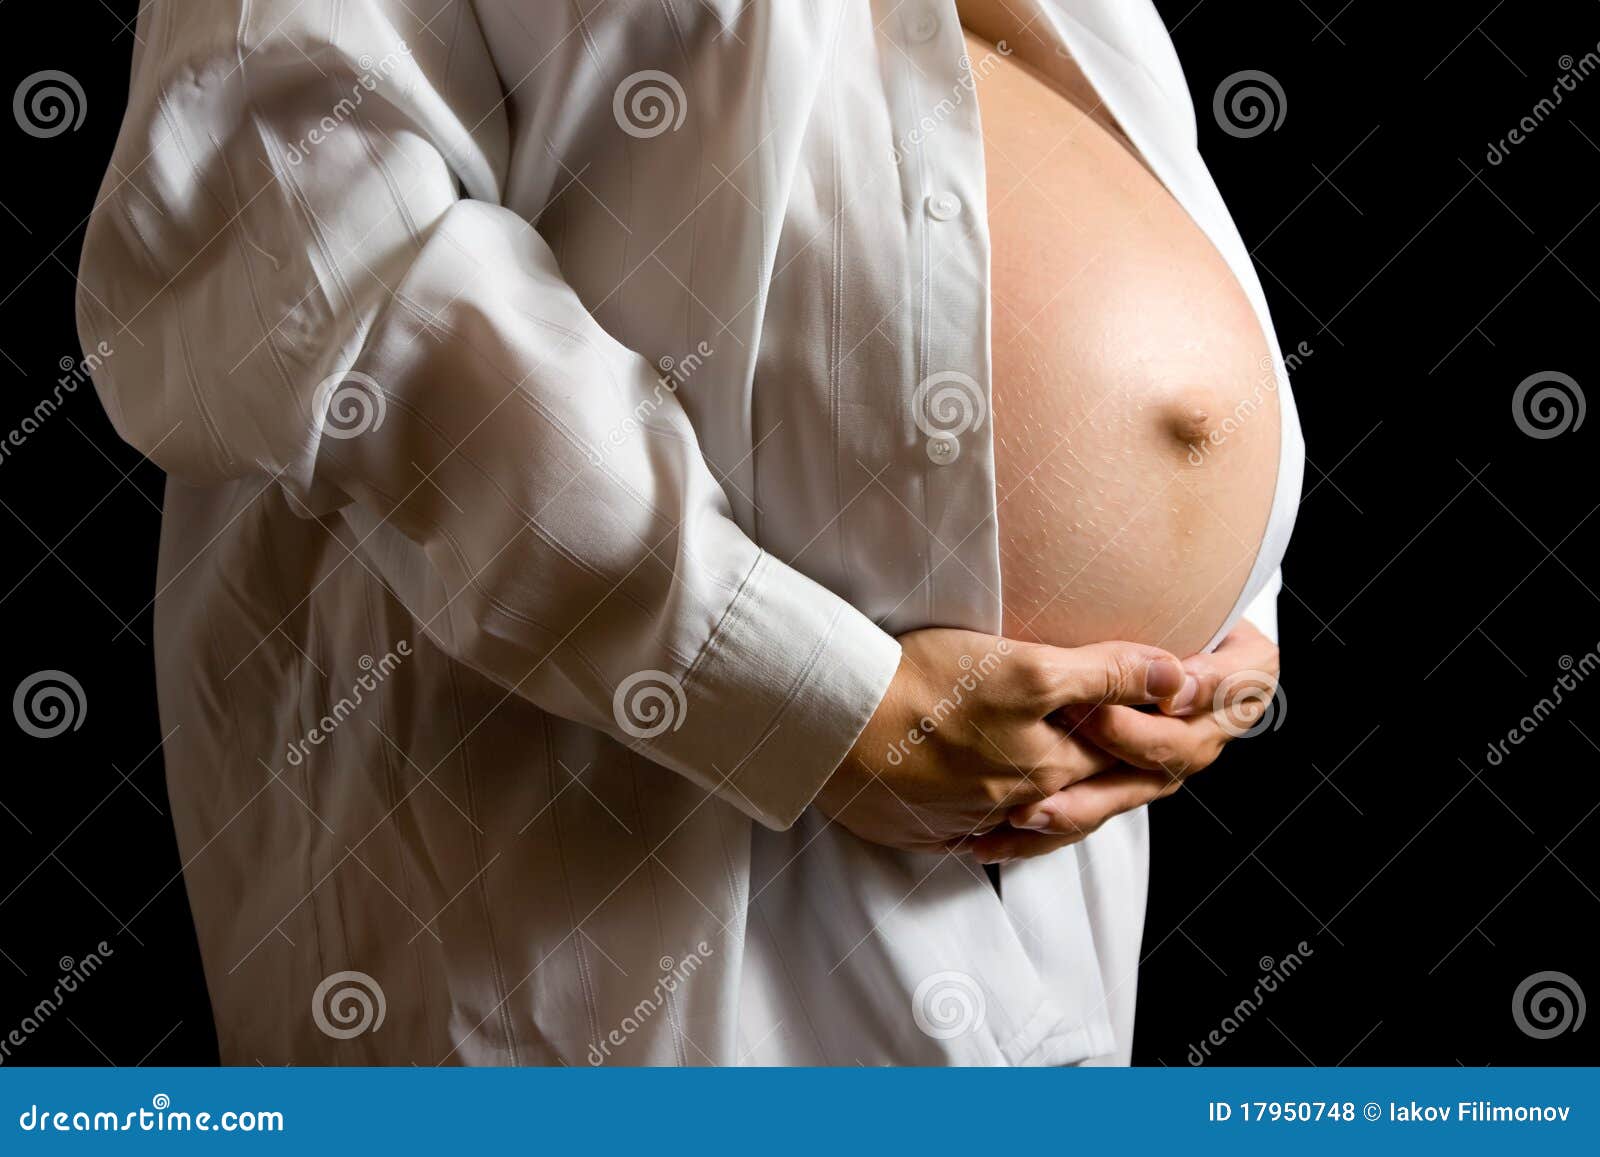 капает из груди не беременная фото 33